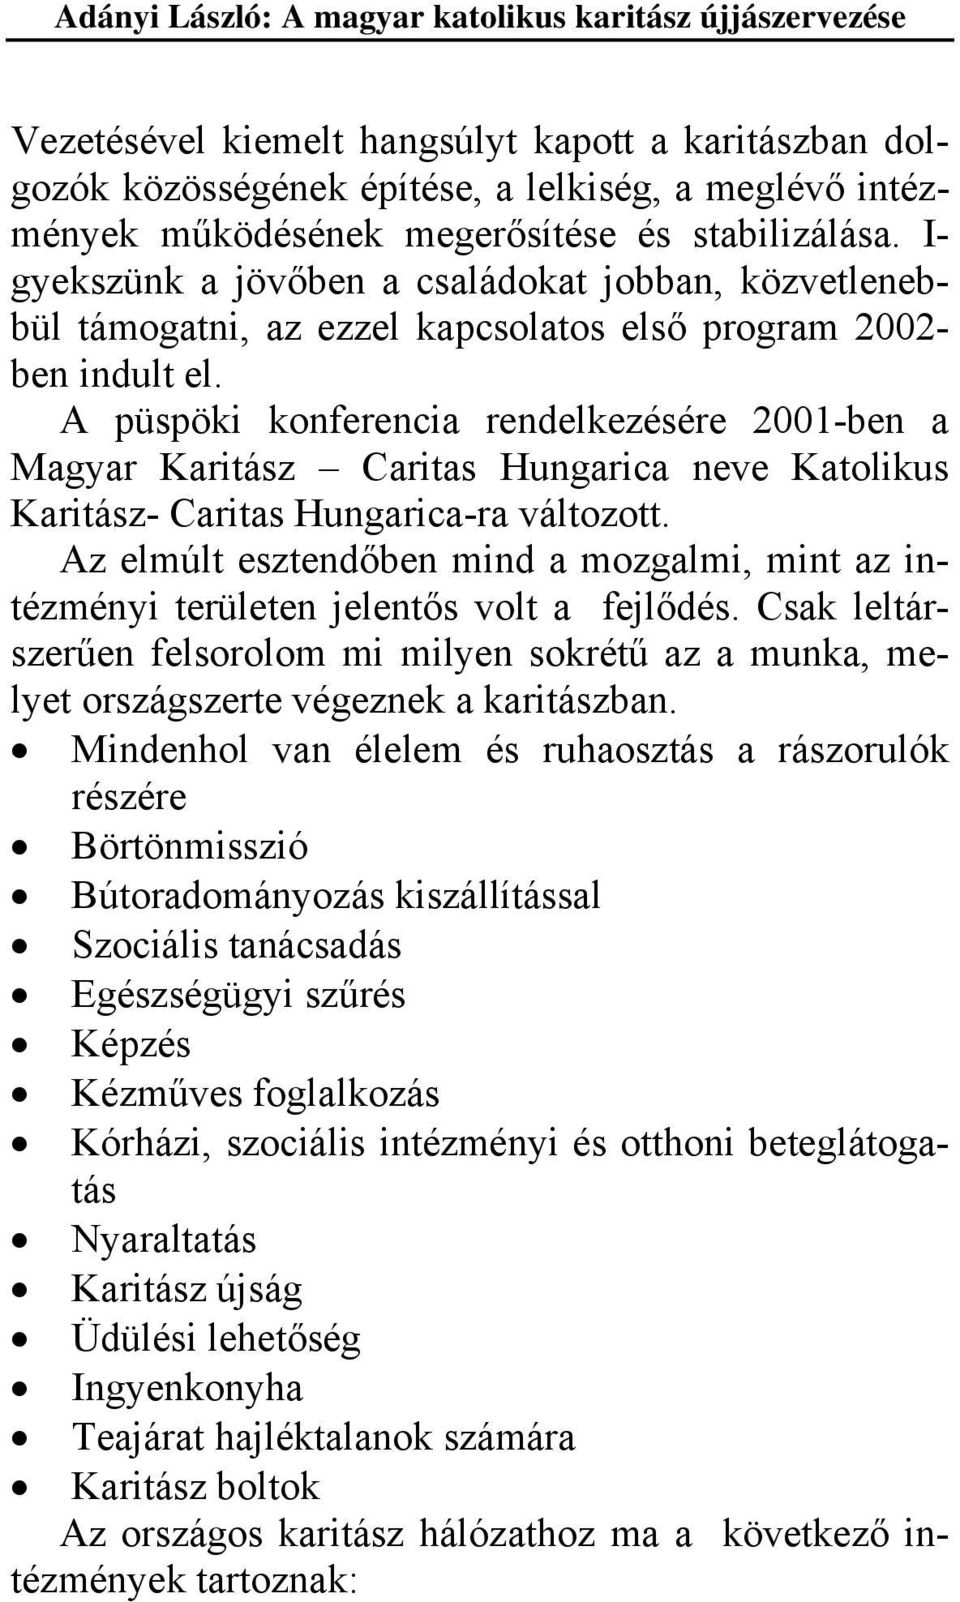 A püspöki konferencia rendelkezésére 2001-ben a Magyar Karitász Caritas Hungarica neve Katolikus Karitász- Caritas Hungarica-ra változott.